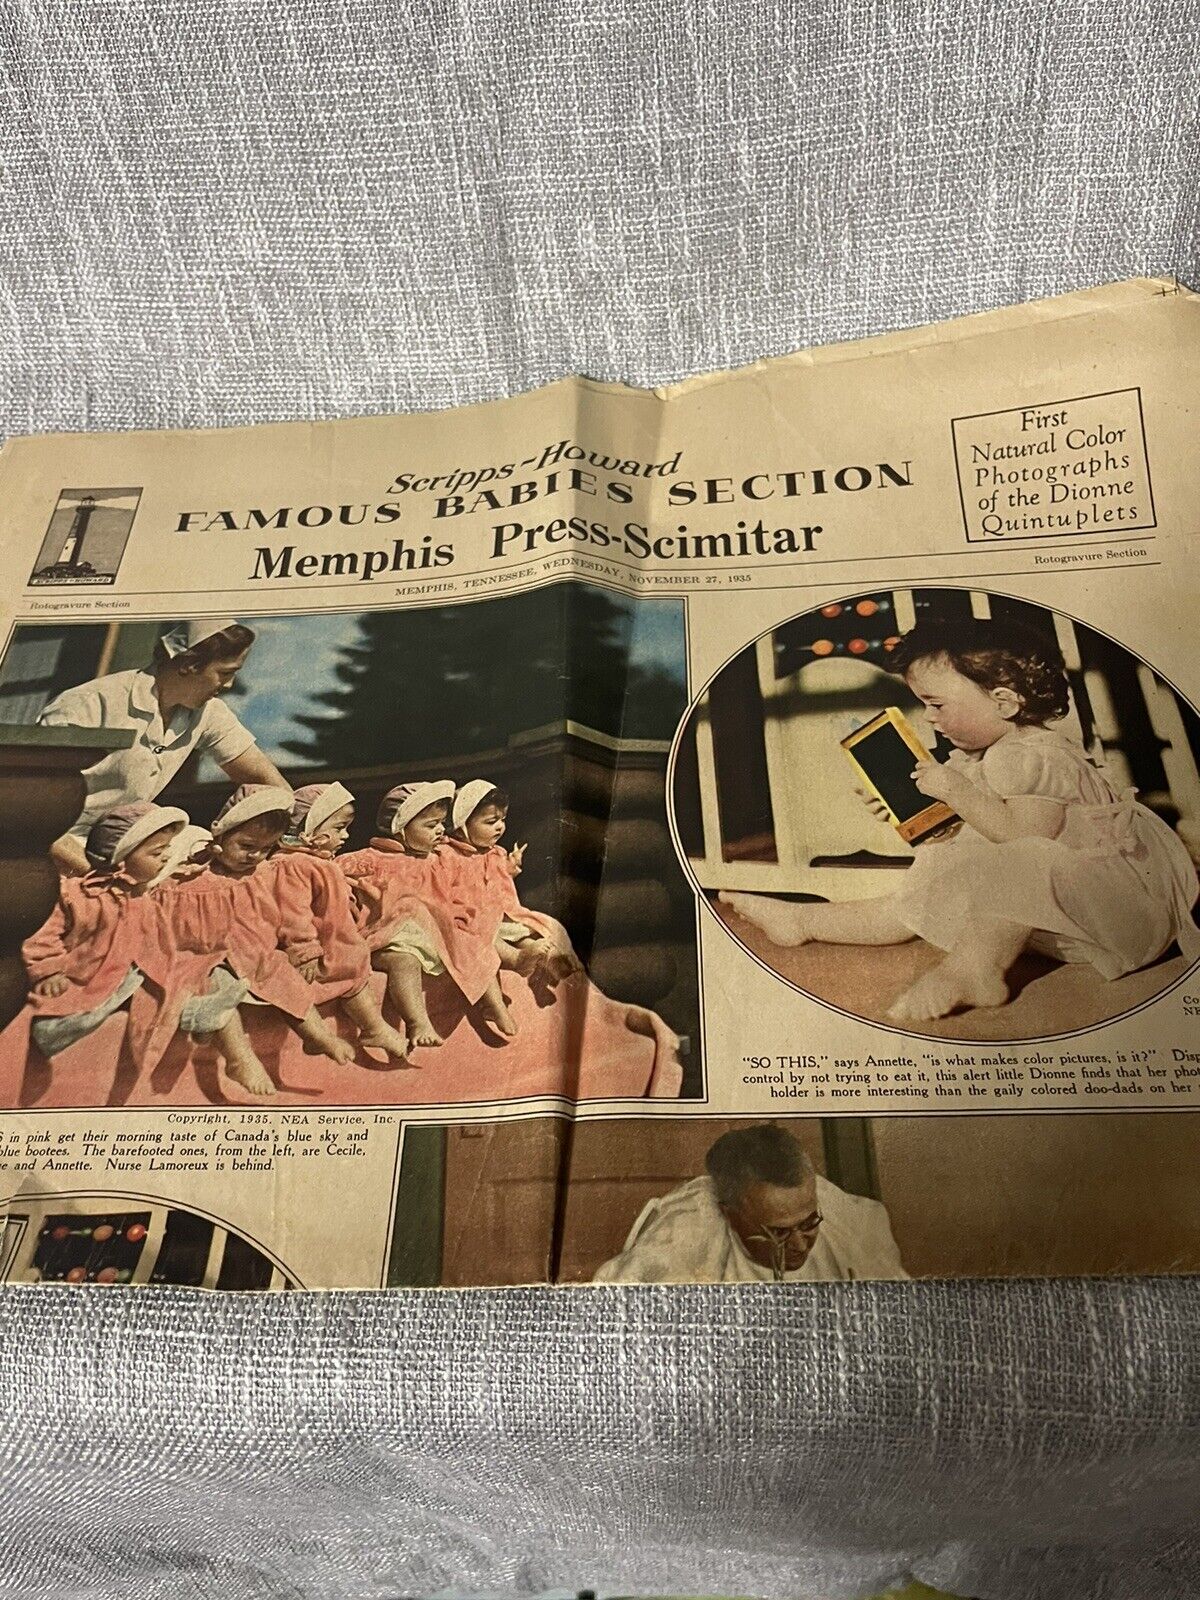 Memphis Press Newspaper Famous Babies 1st Color pictures of Dionne Quintuplets